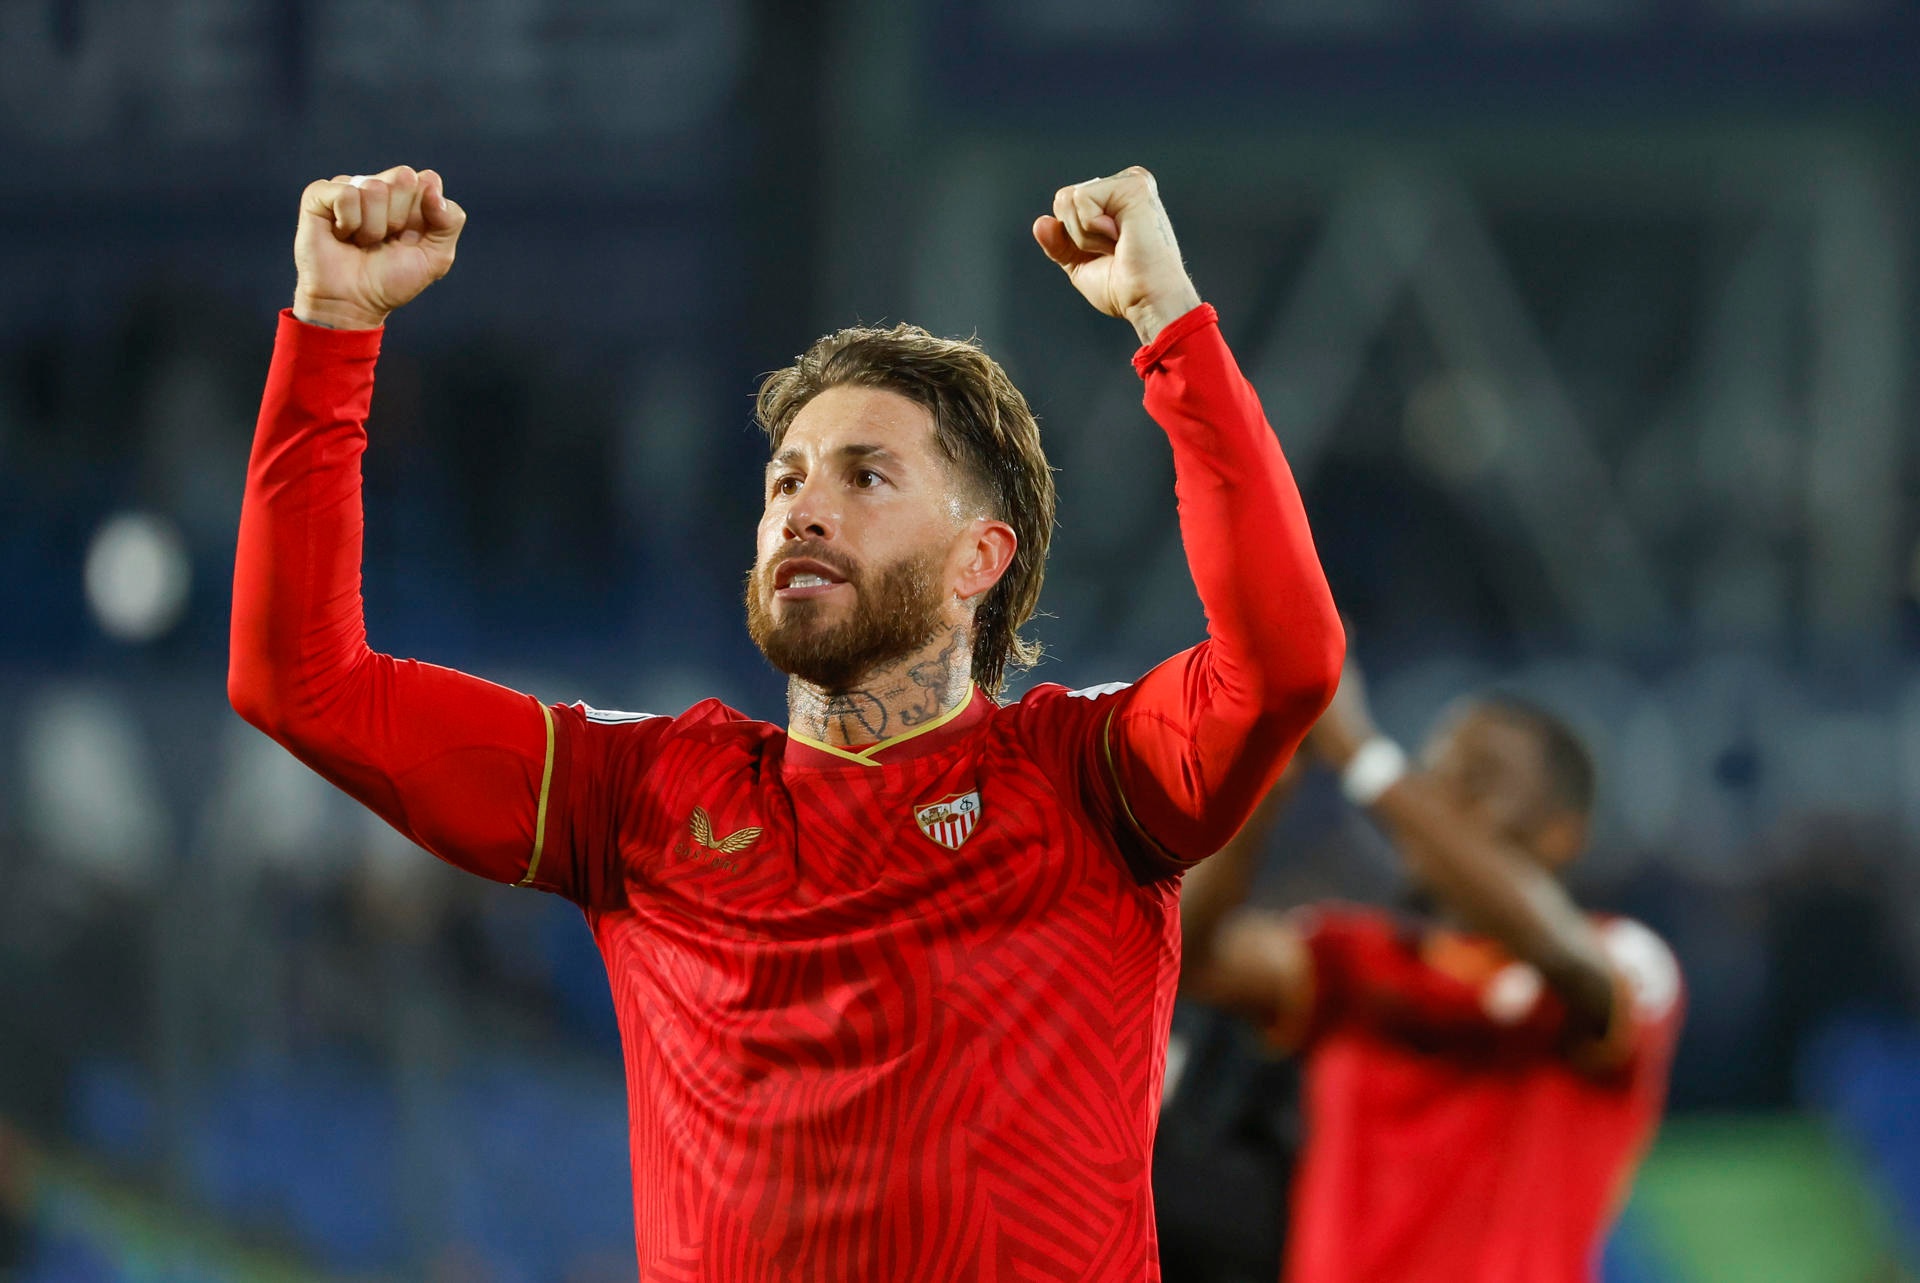 Ramos prioriza al Sevilla, pero busca opciones fuera